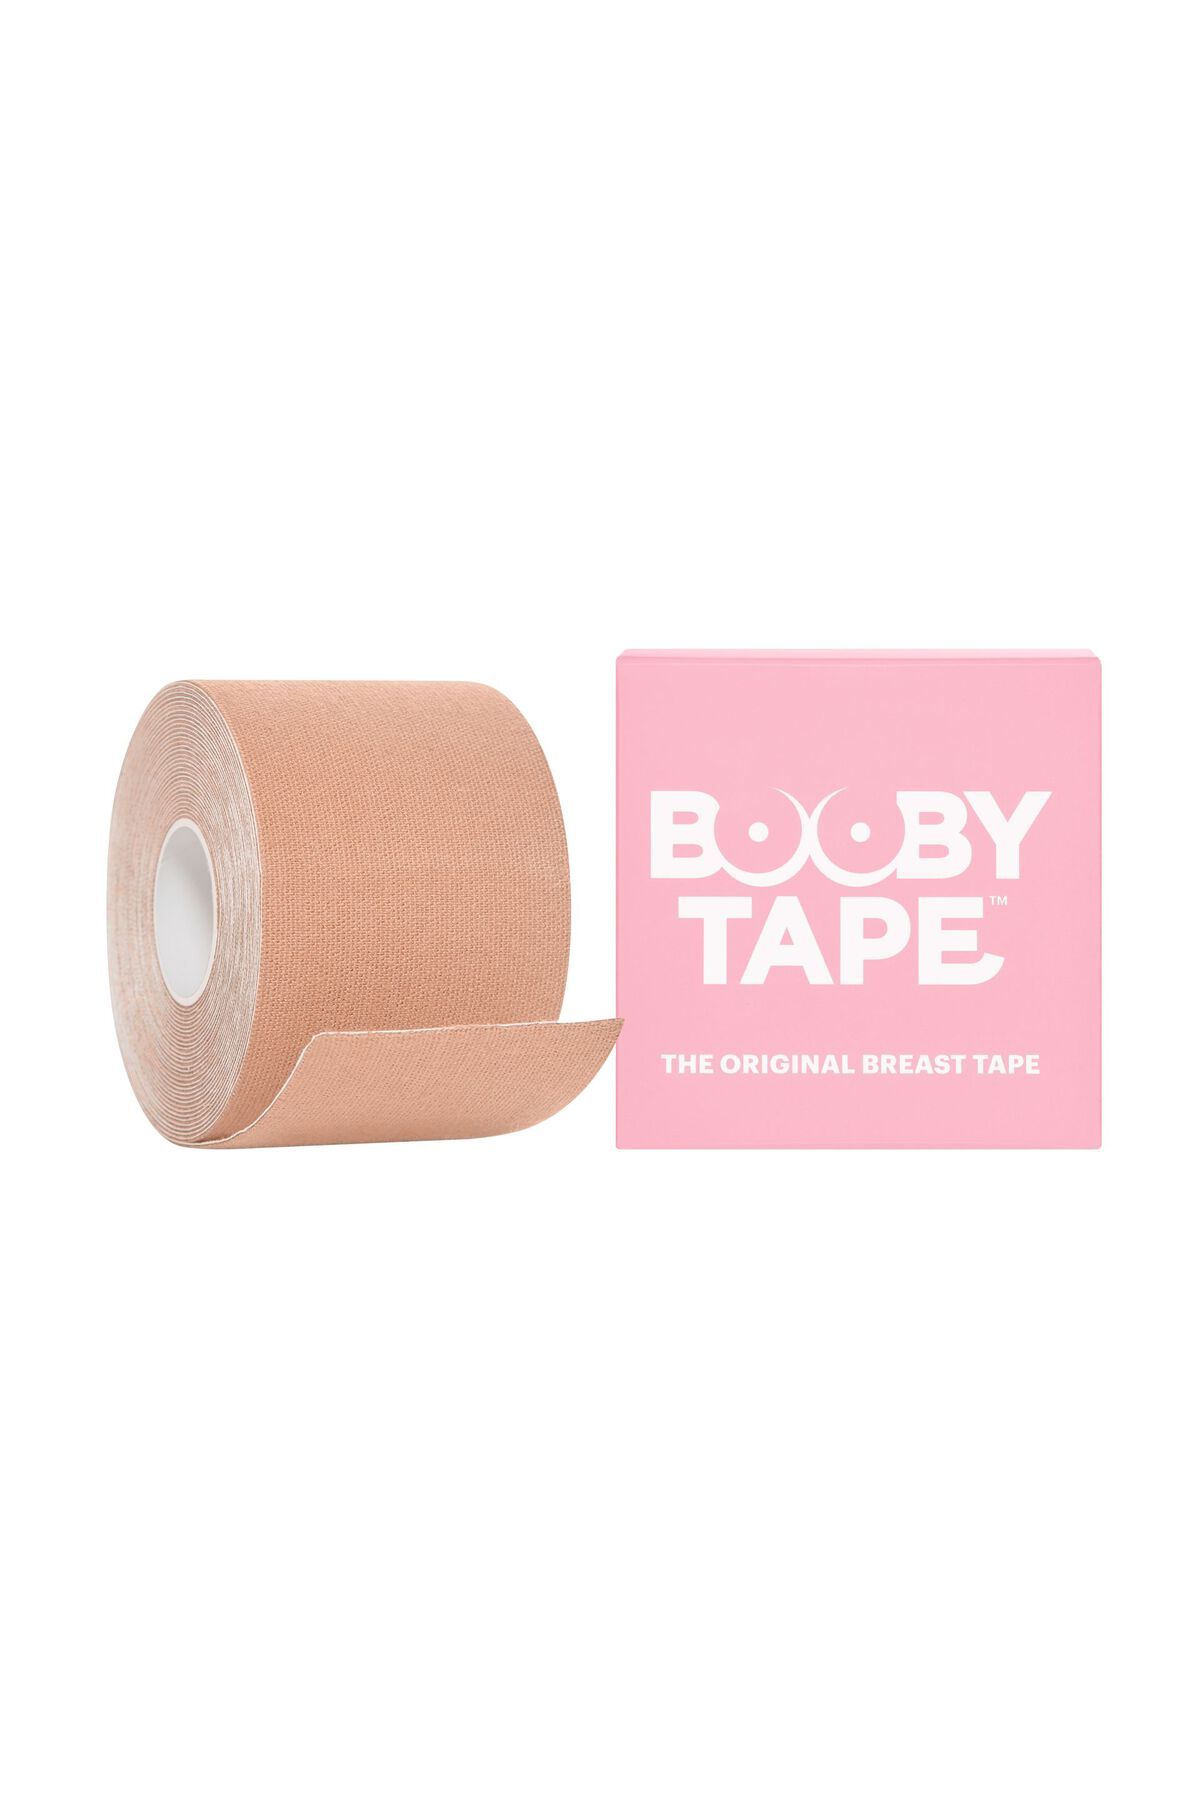 Boob tape (wide) - Beige, Guts & Gusto